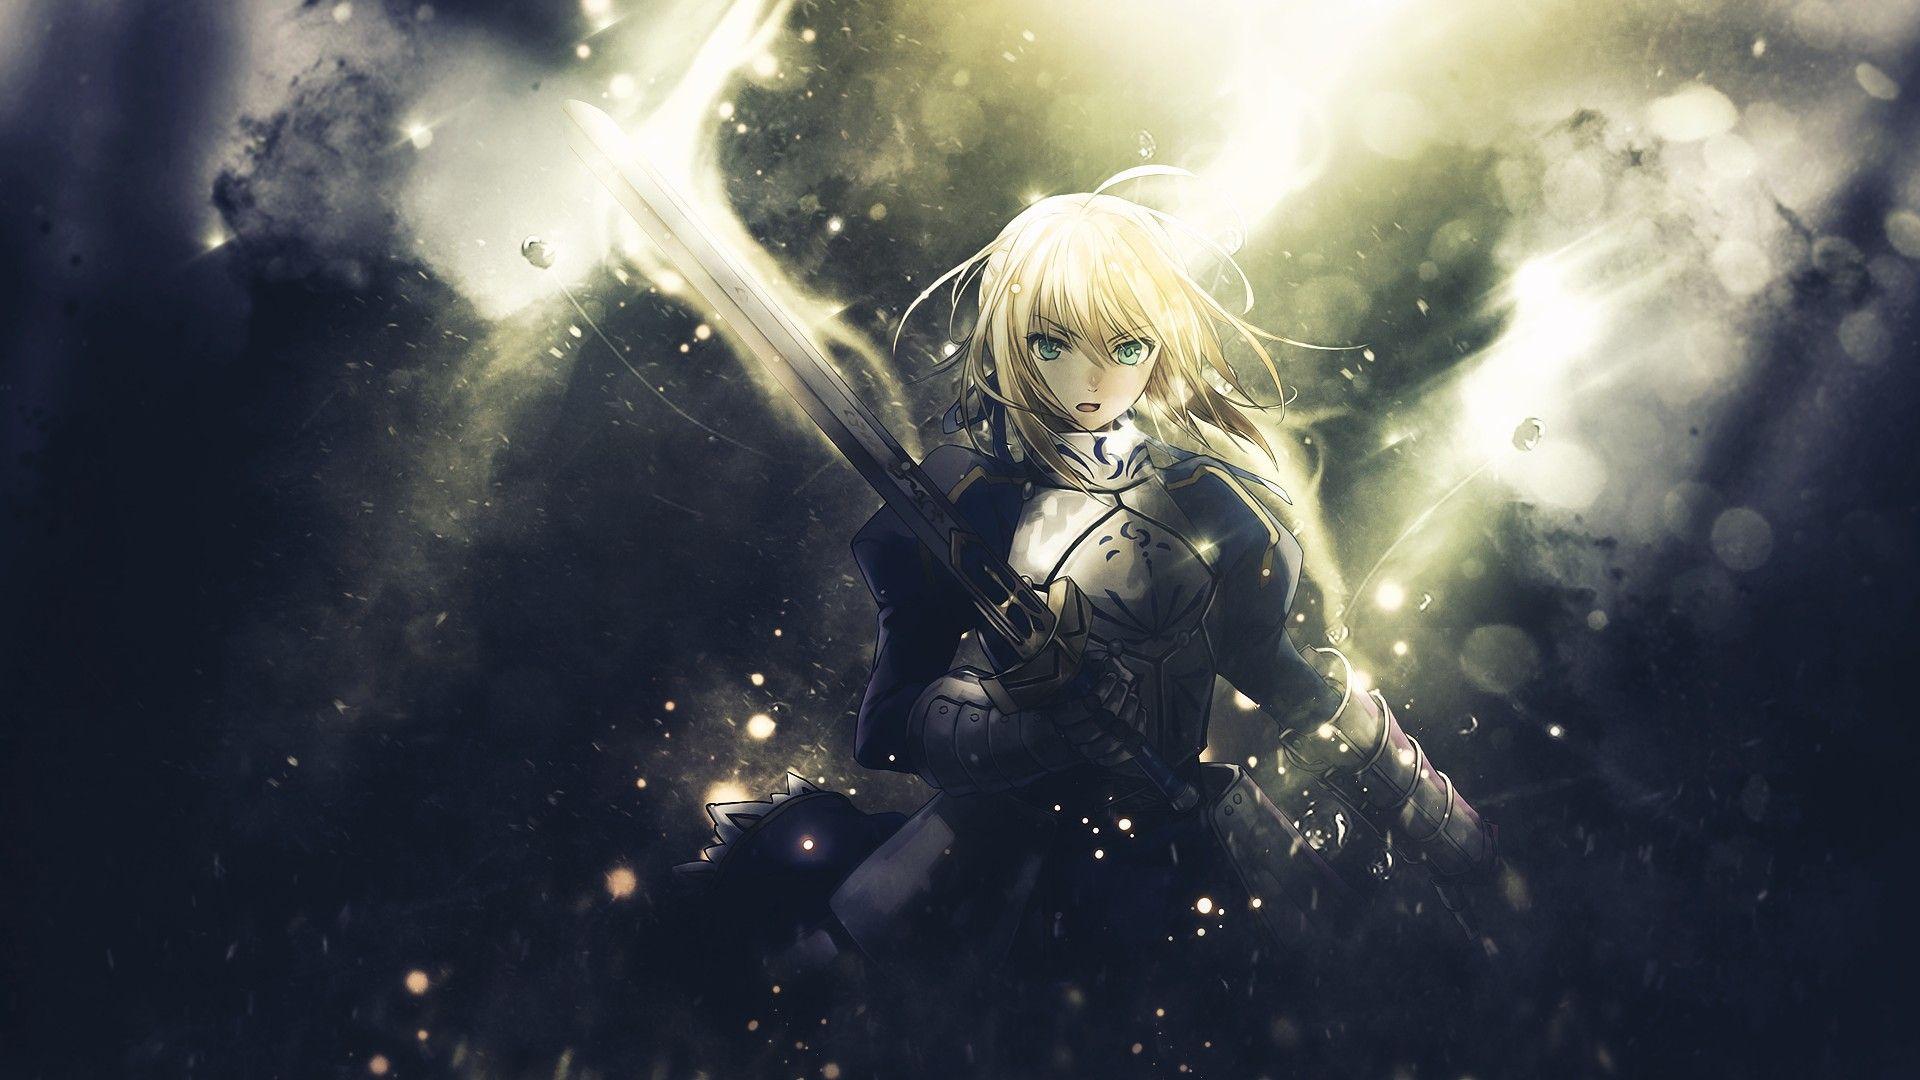 Fate Zero wallpaperDownload free High Resolution background